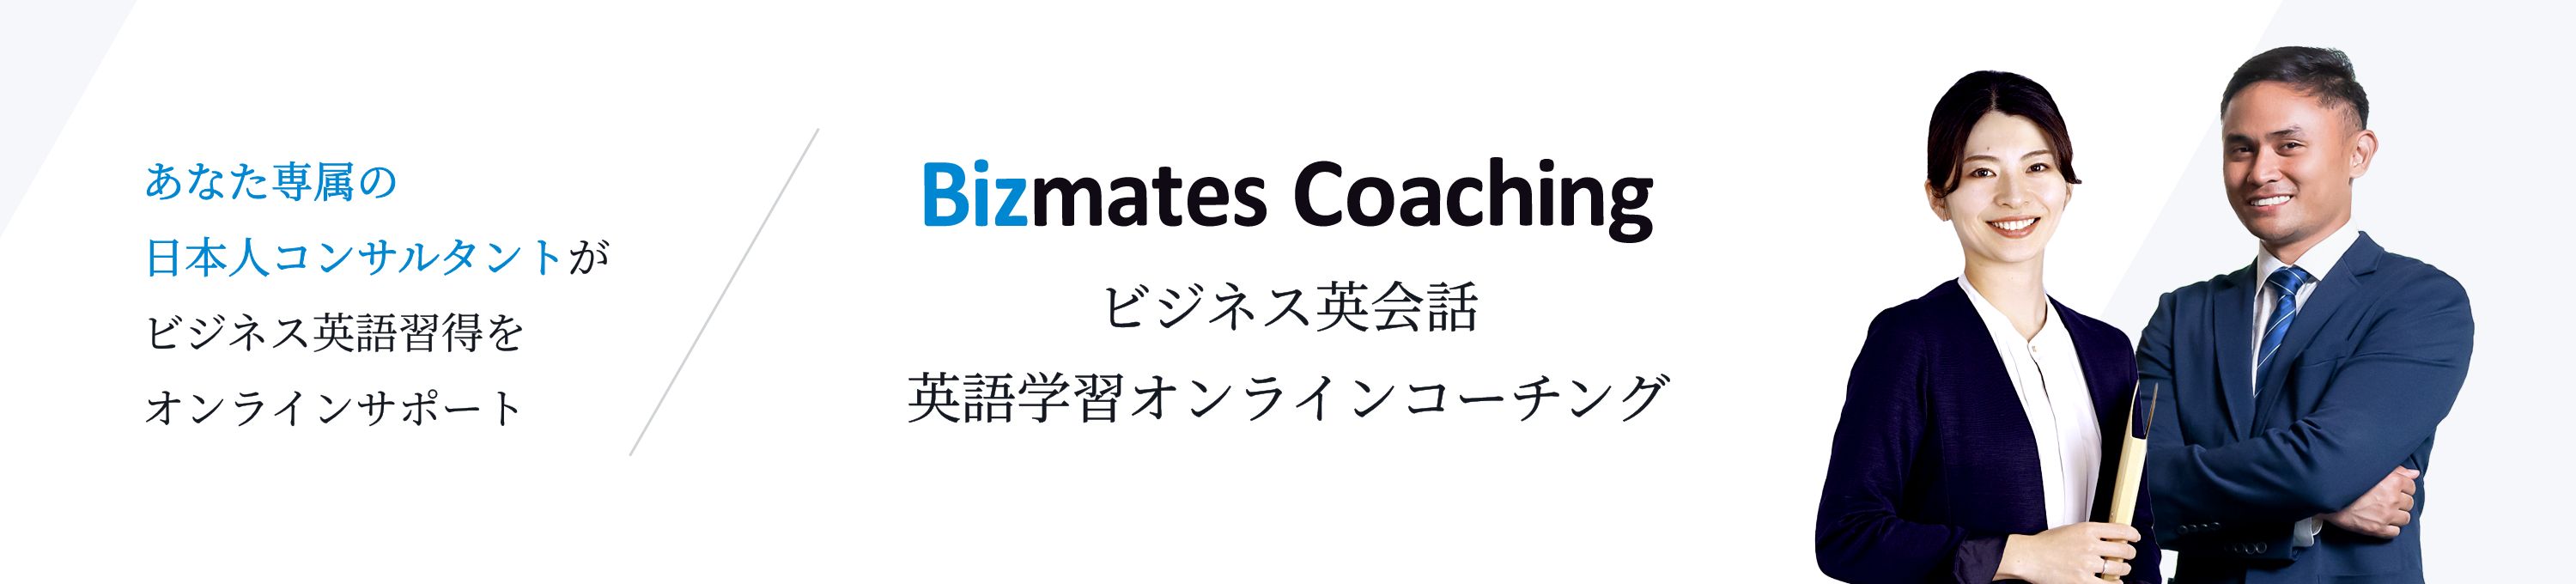 Bizmates Coaching